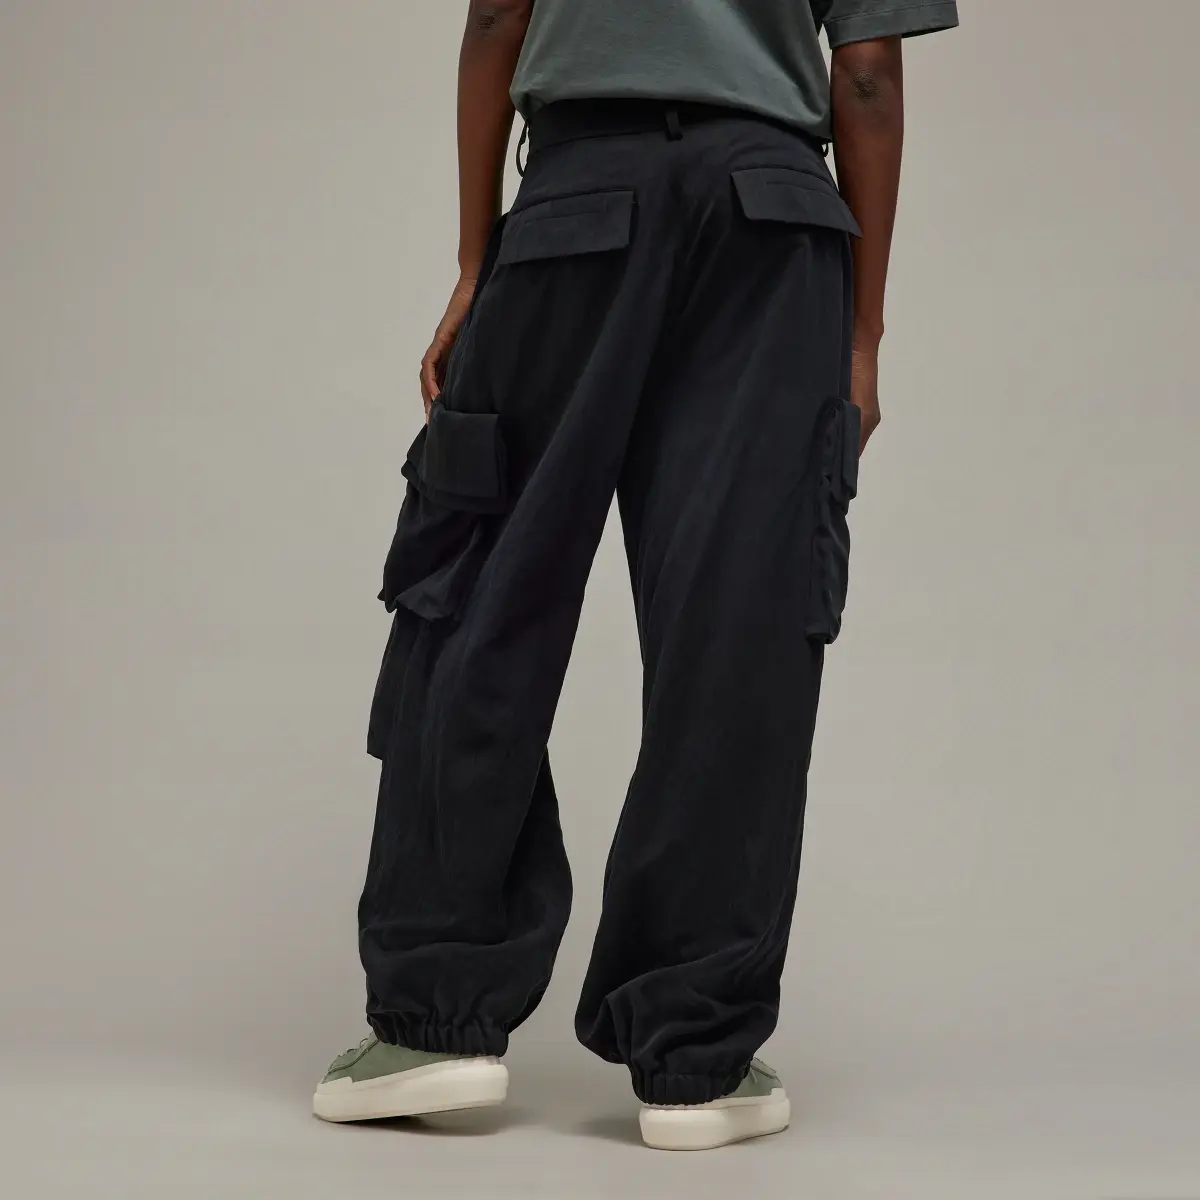 Adidas Y-3 Cuffed Cargo Pants. 3